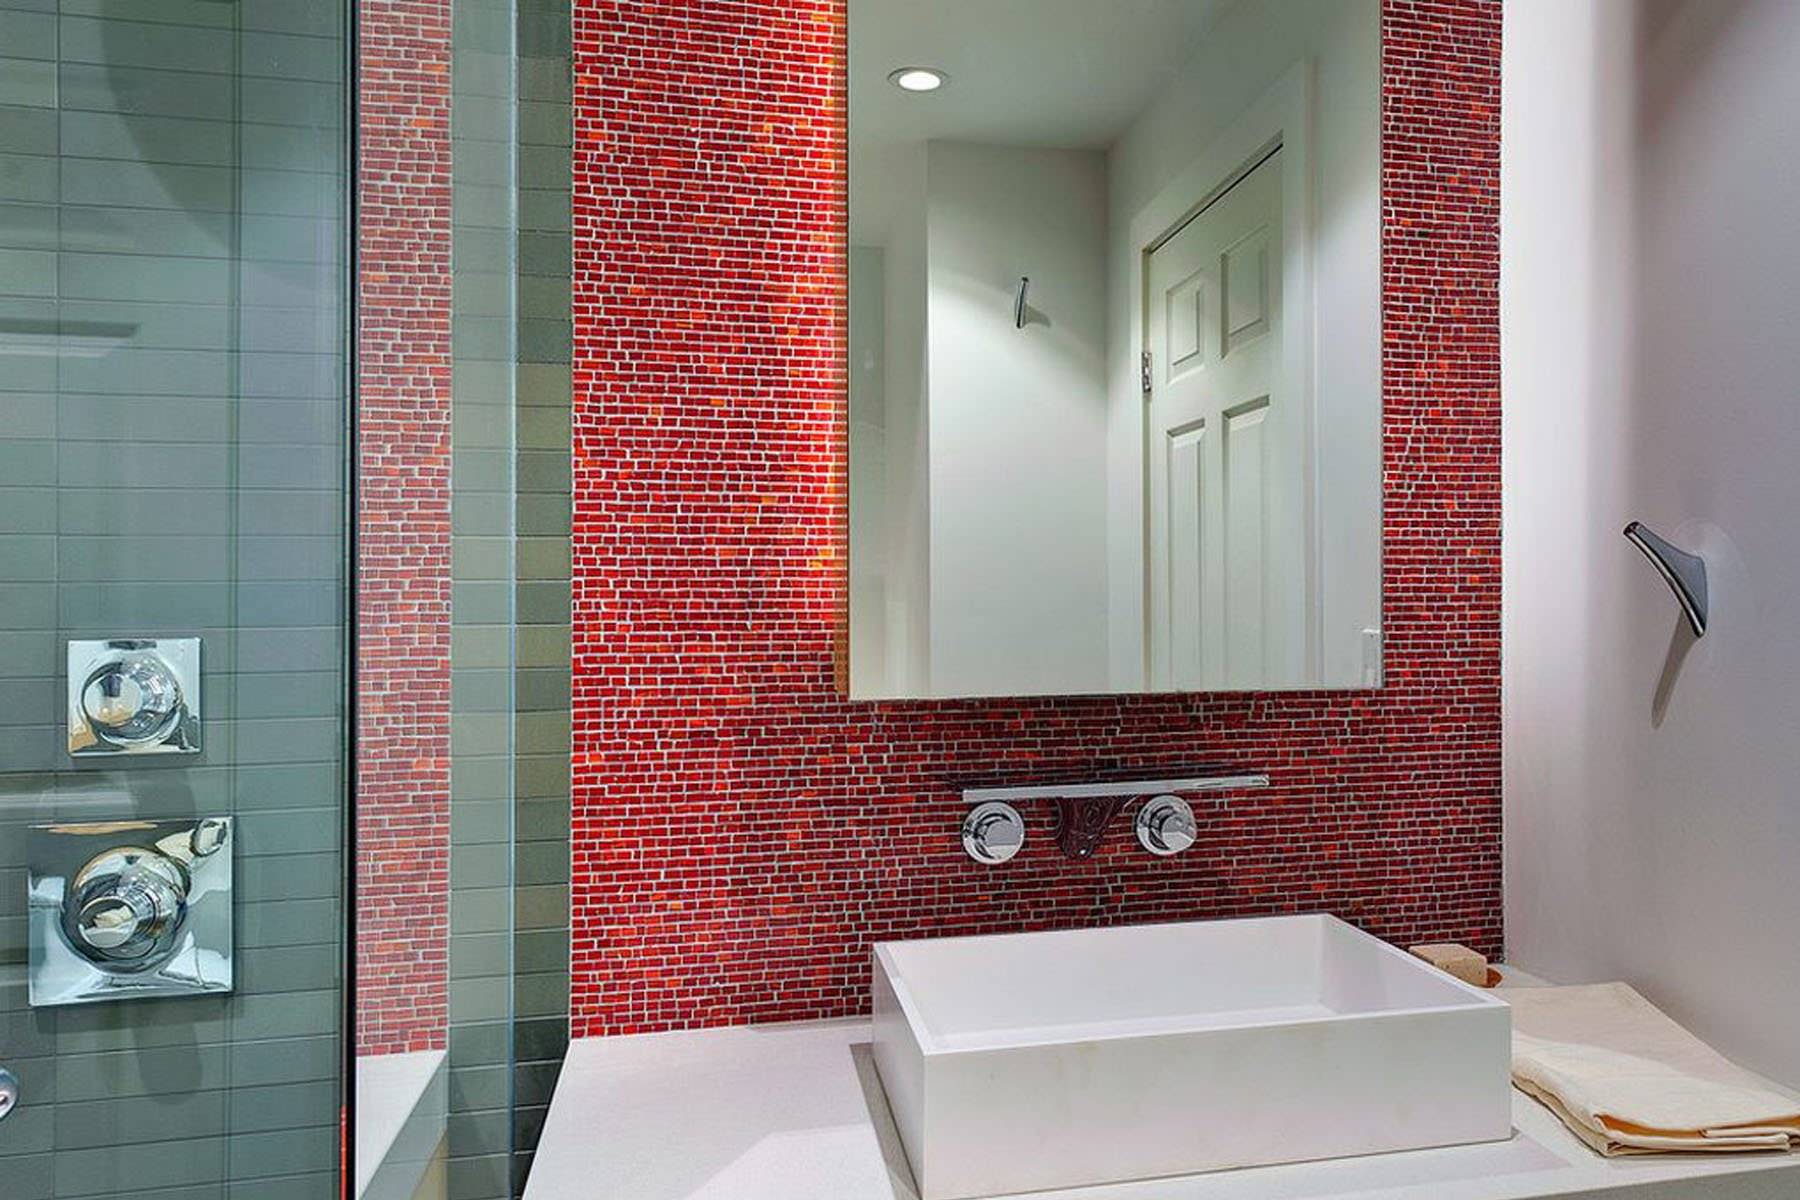 Дизайн плитки для ванной комнаты - советы по выбору цвета и типа, уникальные фото идеи